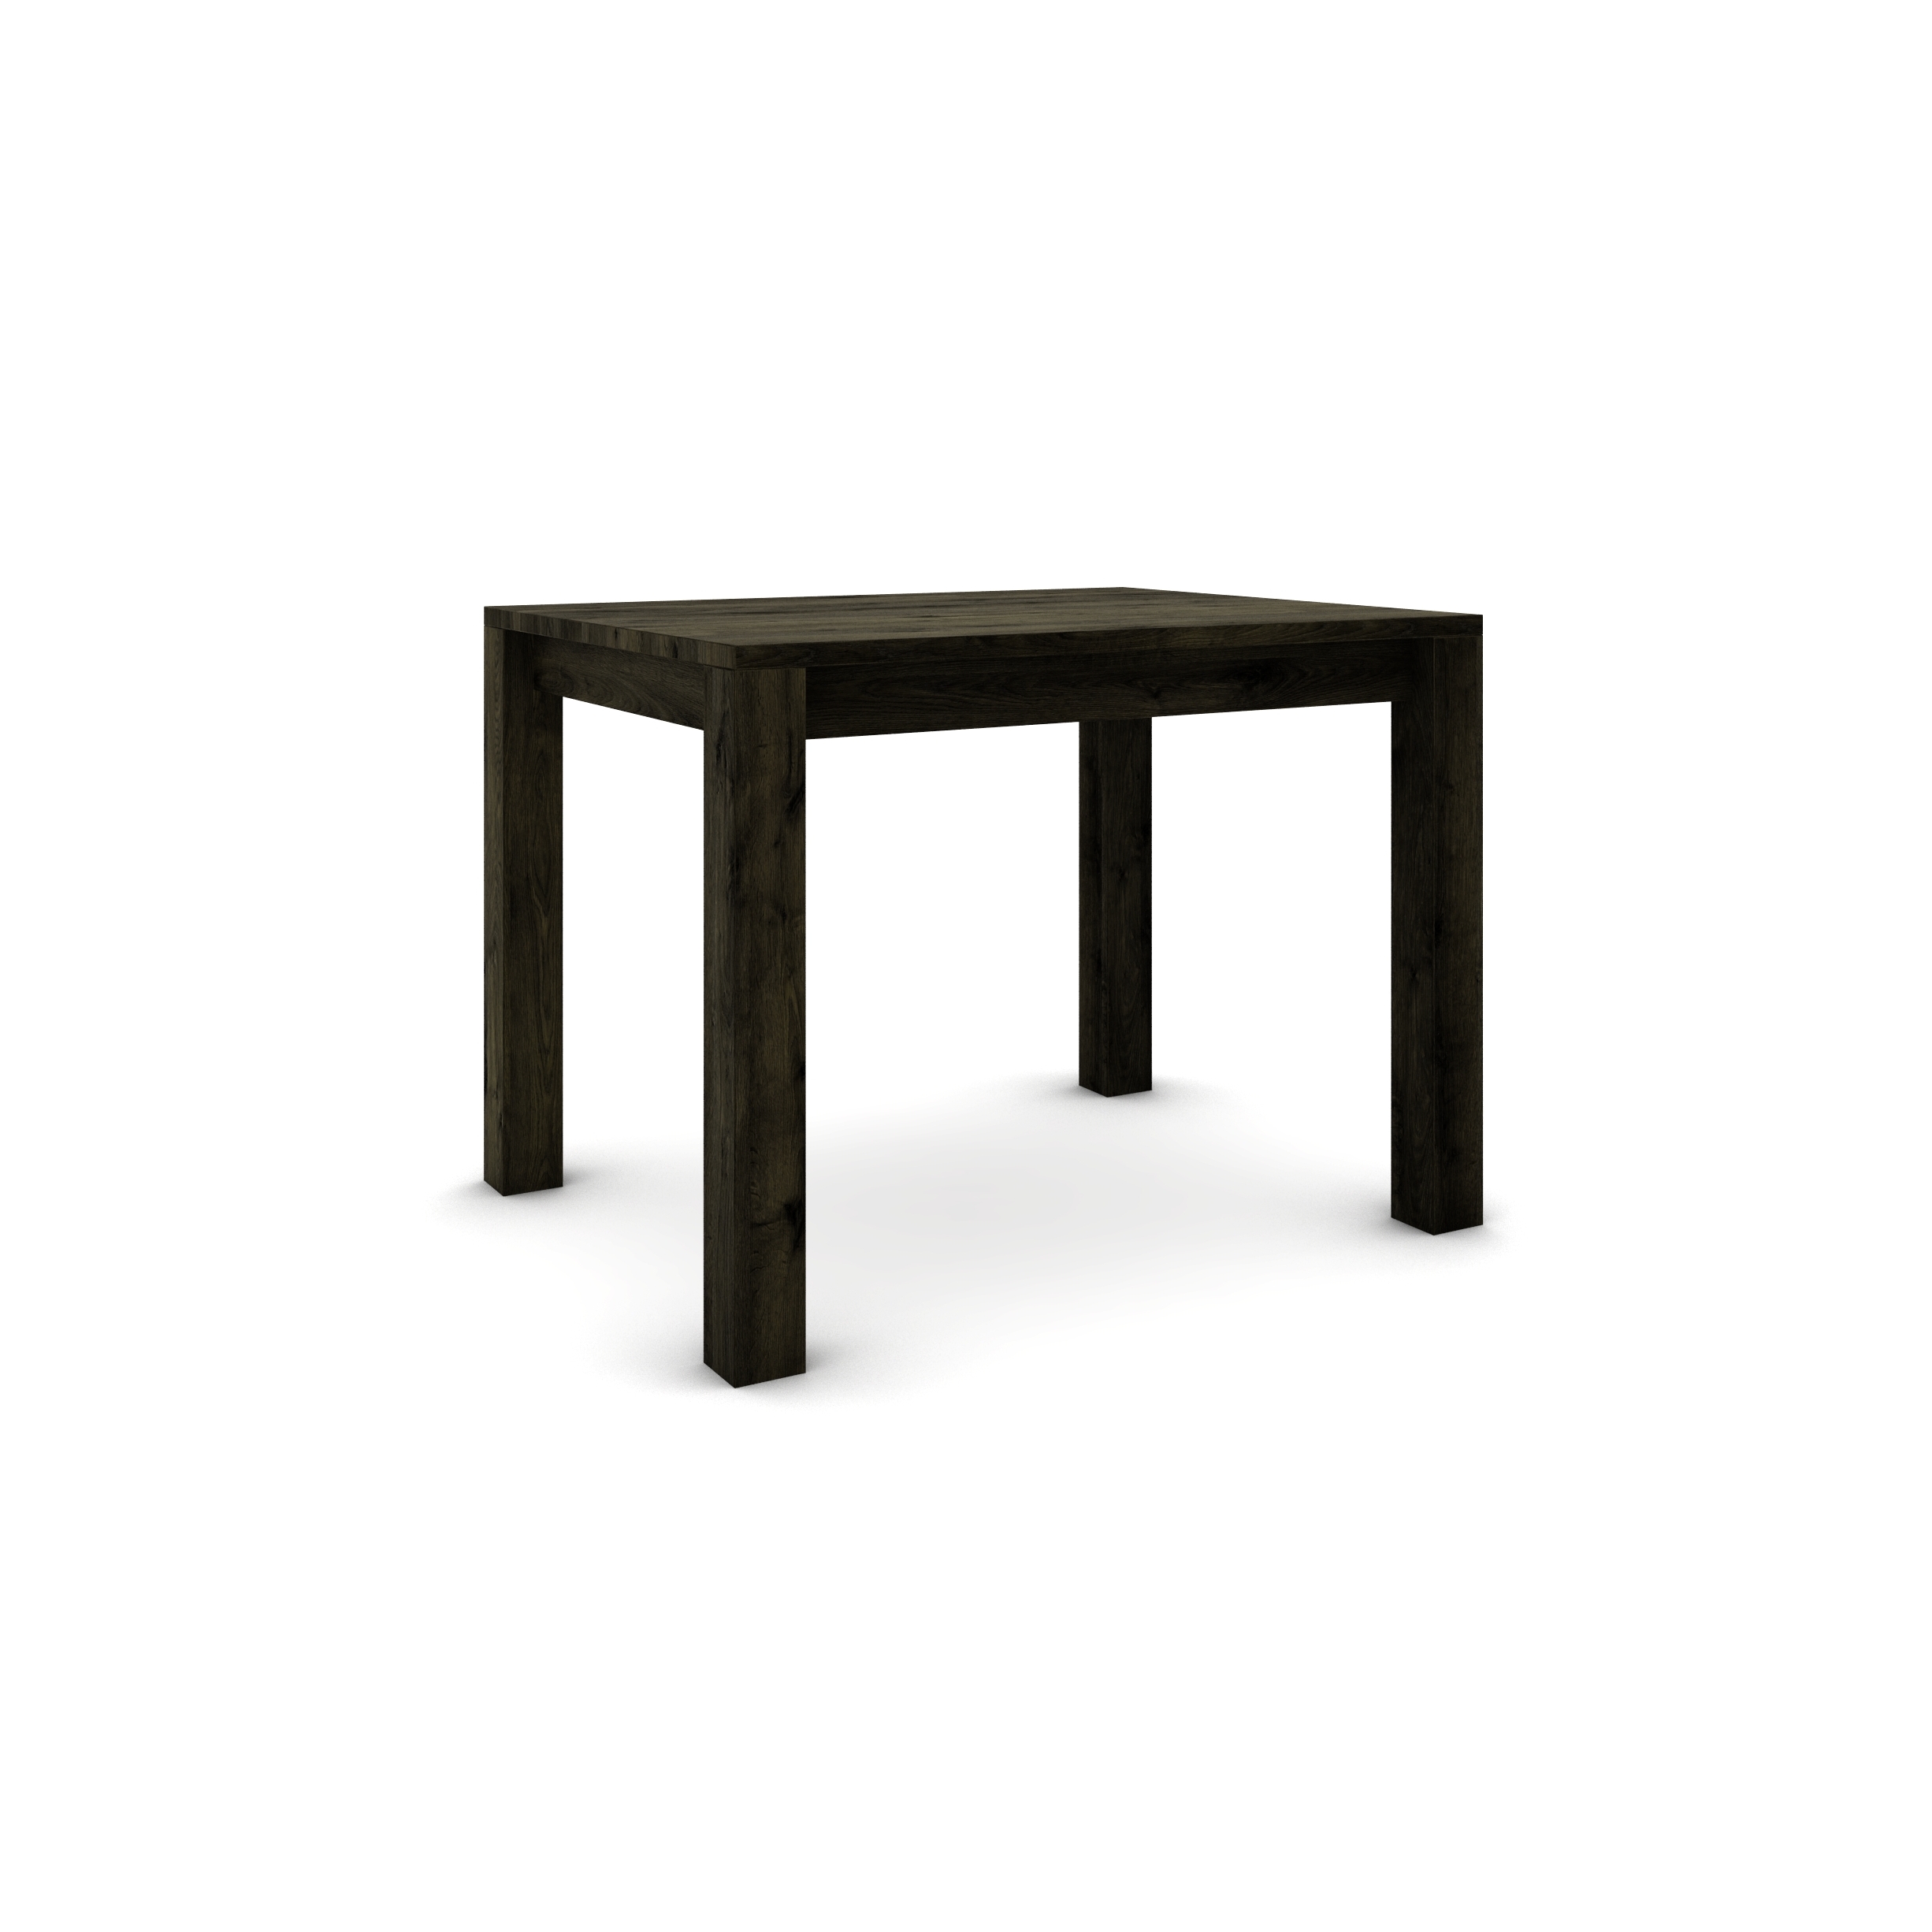 Dubový stůl 100 x 80 cm , černý se stříbrným efektem